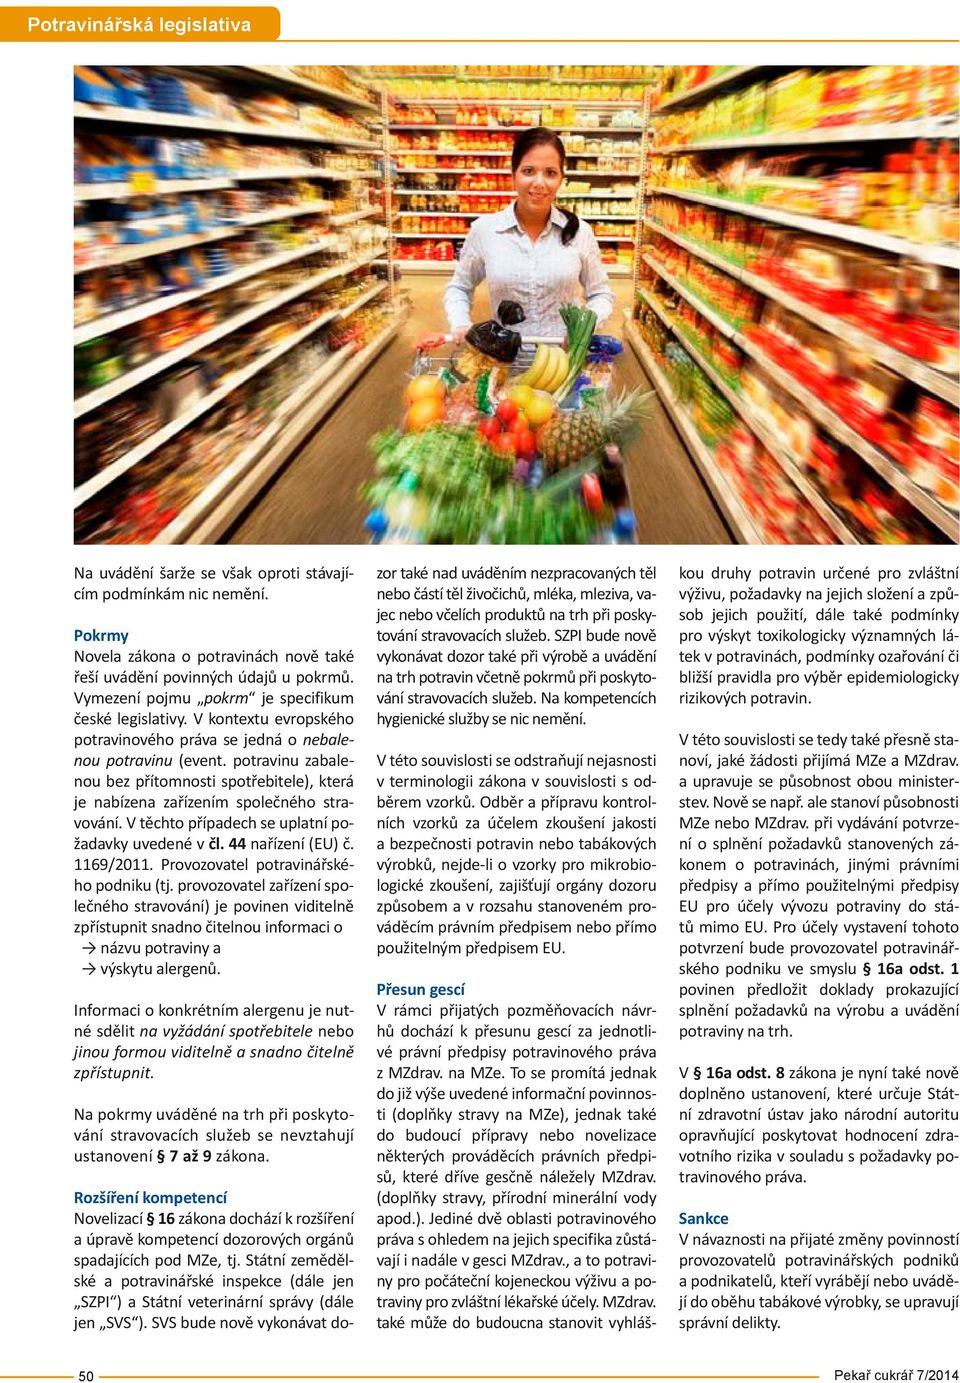 potravinu zabalenou bez přítomnosti spotřebitele), která je nabízena zařízením společného stravování. V těchto případech se uplatní požadavky uvedené v čl. 44 nařízení (EU) č. 1169/2011.